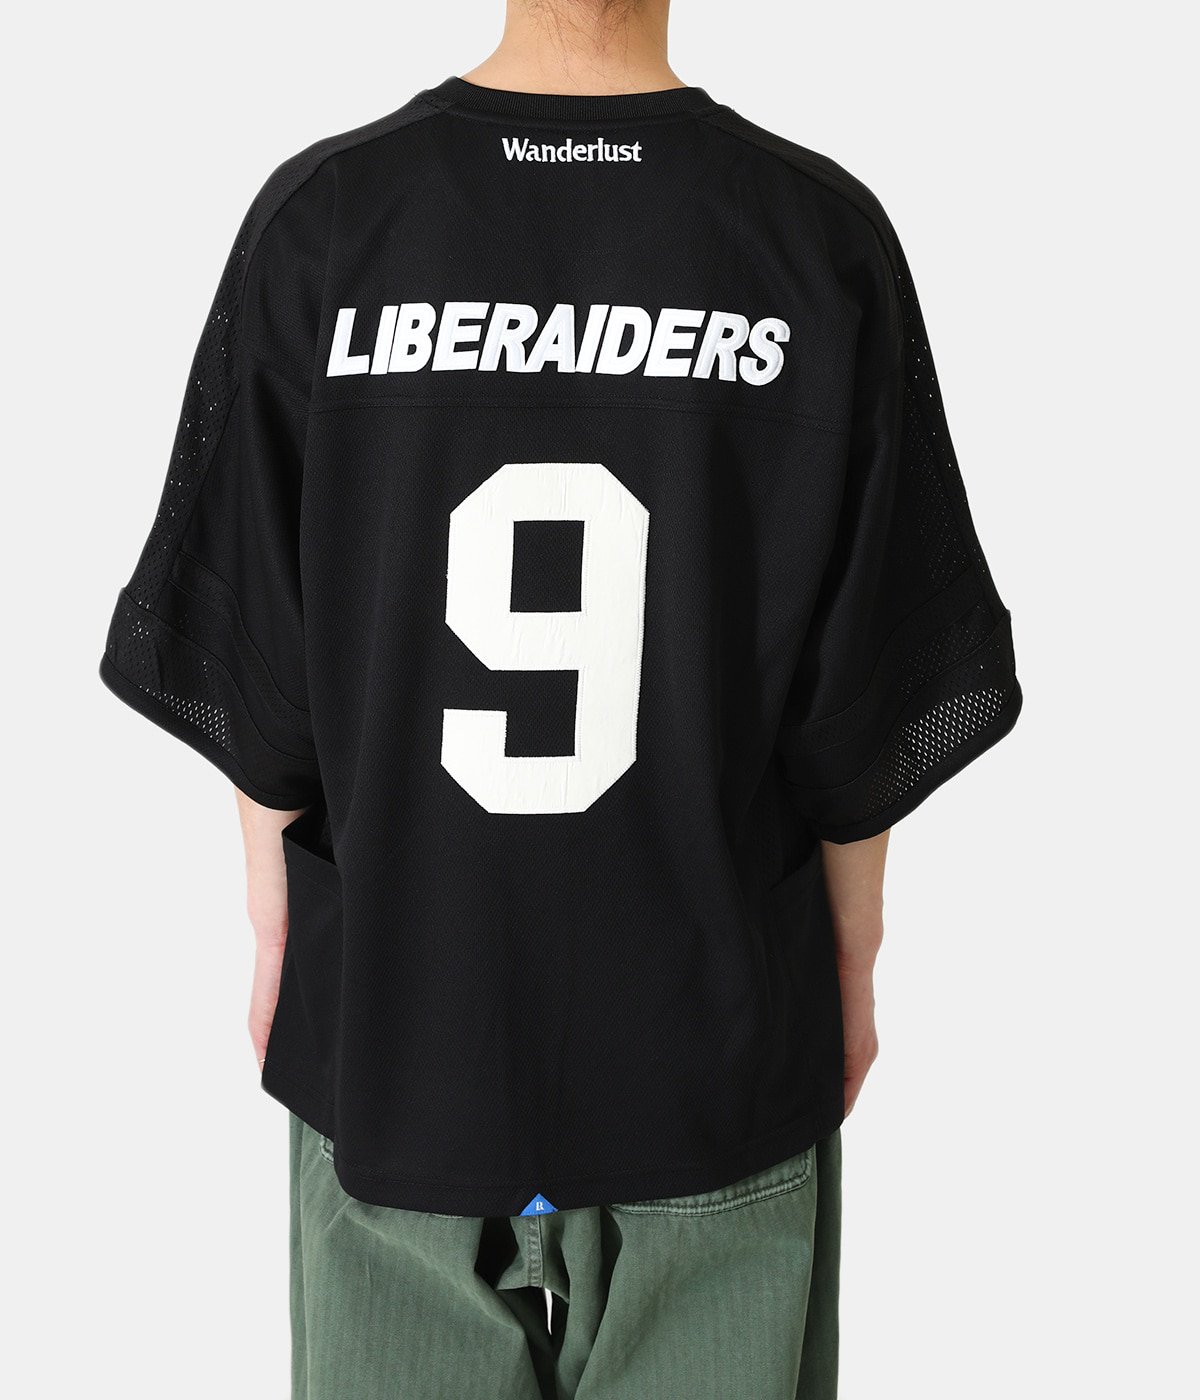 LIBERAIDERS HOCKEY SHIRTS | Liberaiders(リベレイダース) / トップス 